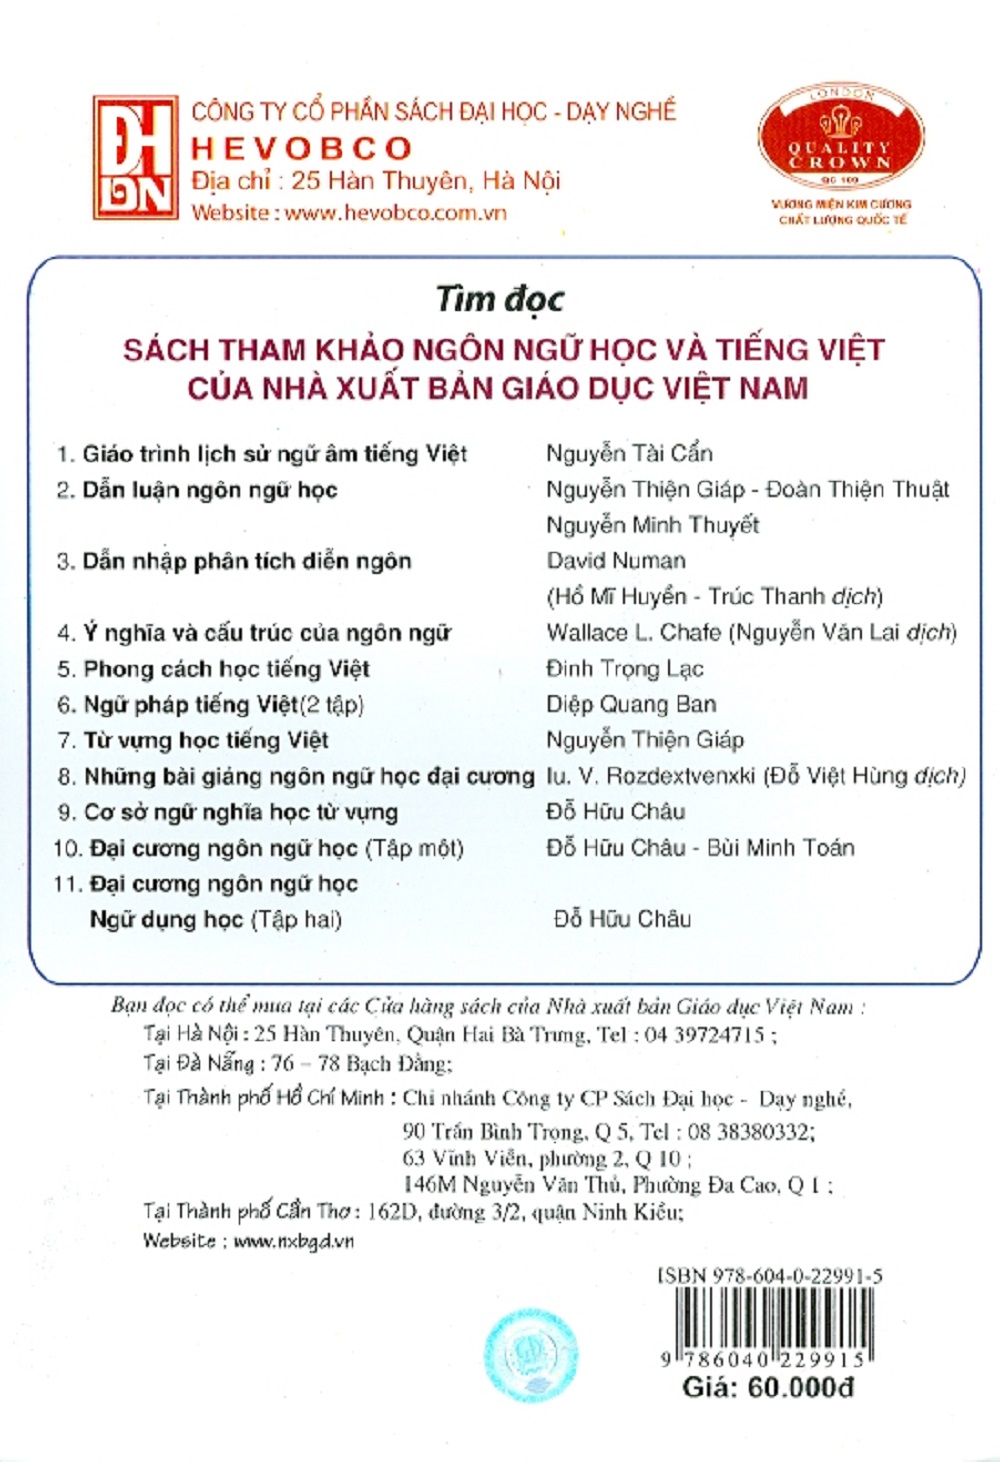 Cơ Sở Ngôn Ngữ Học Và Tiếng Việt